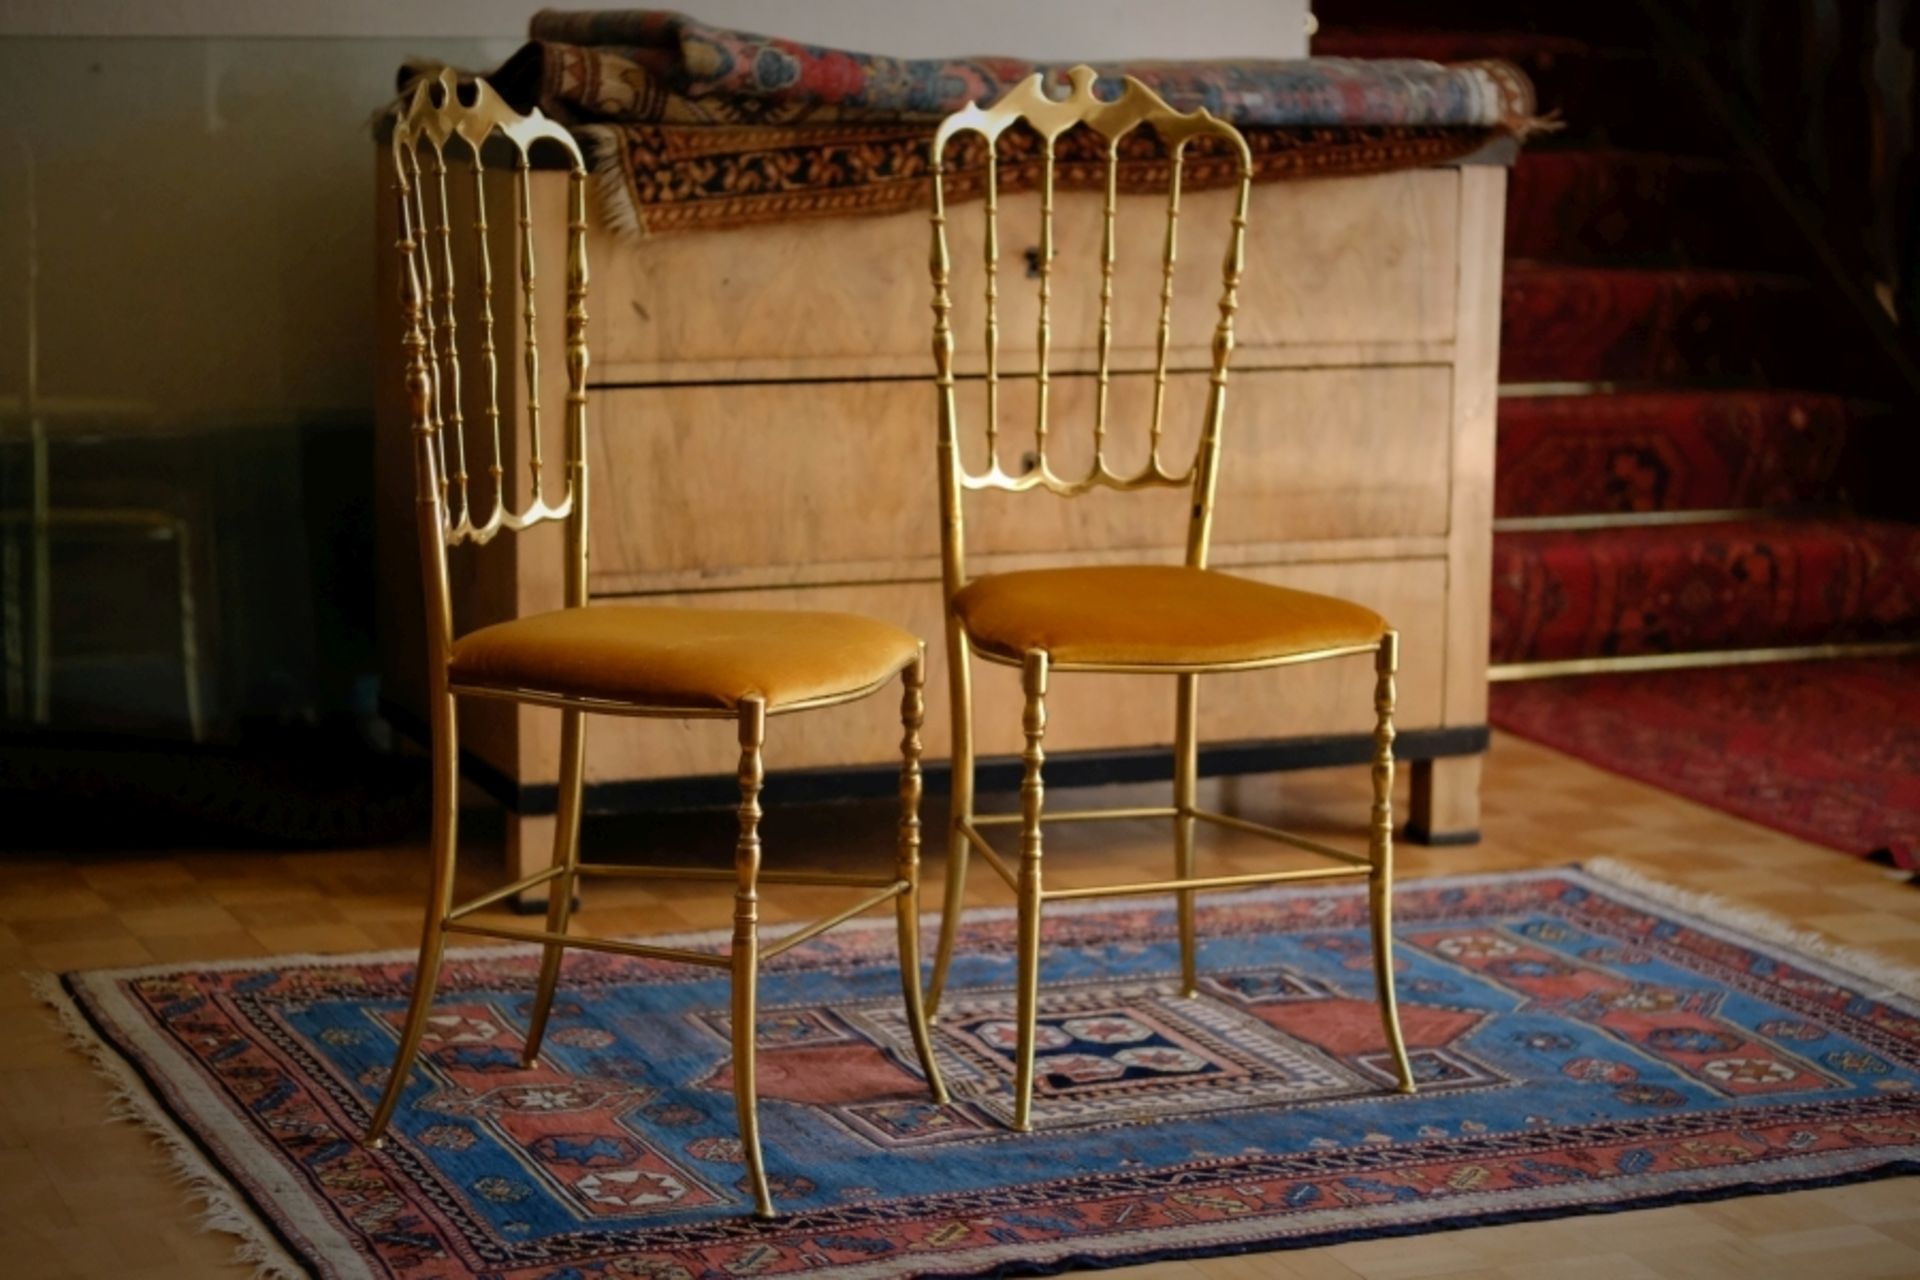 2 METALLSTüHLE, im Stil von Chiavari-Stühlen